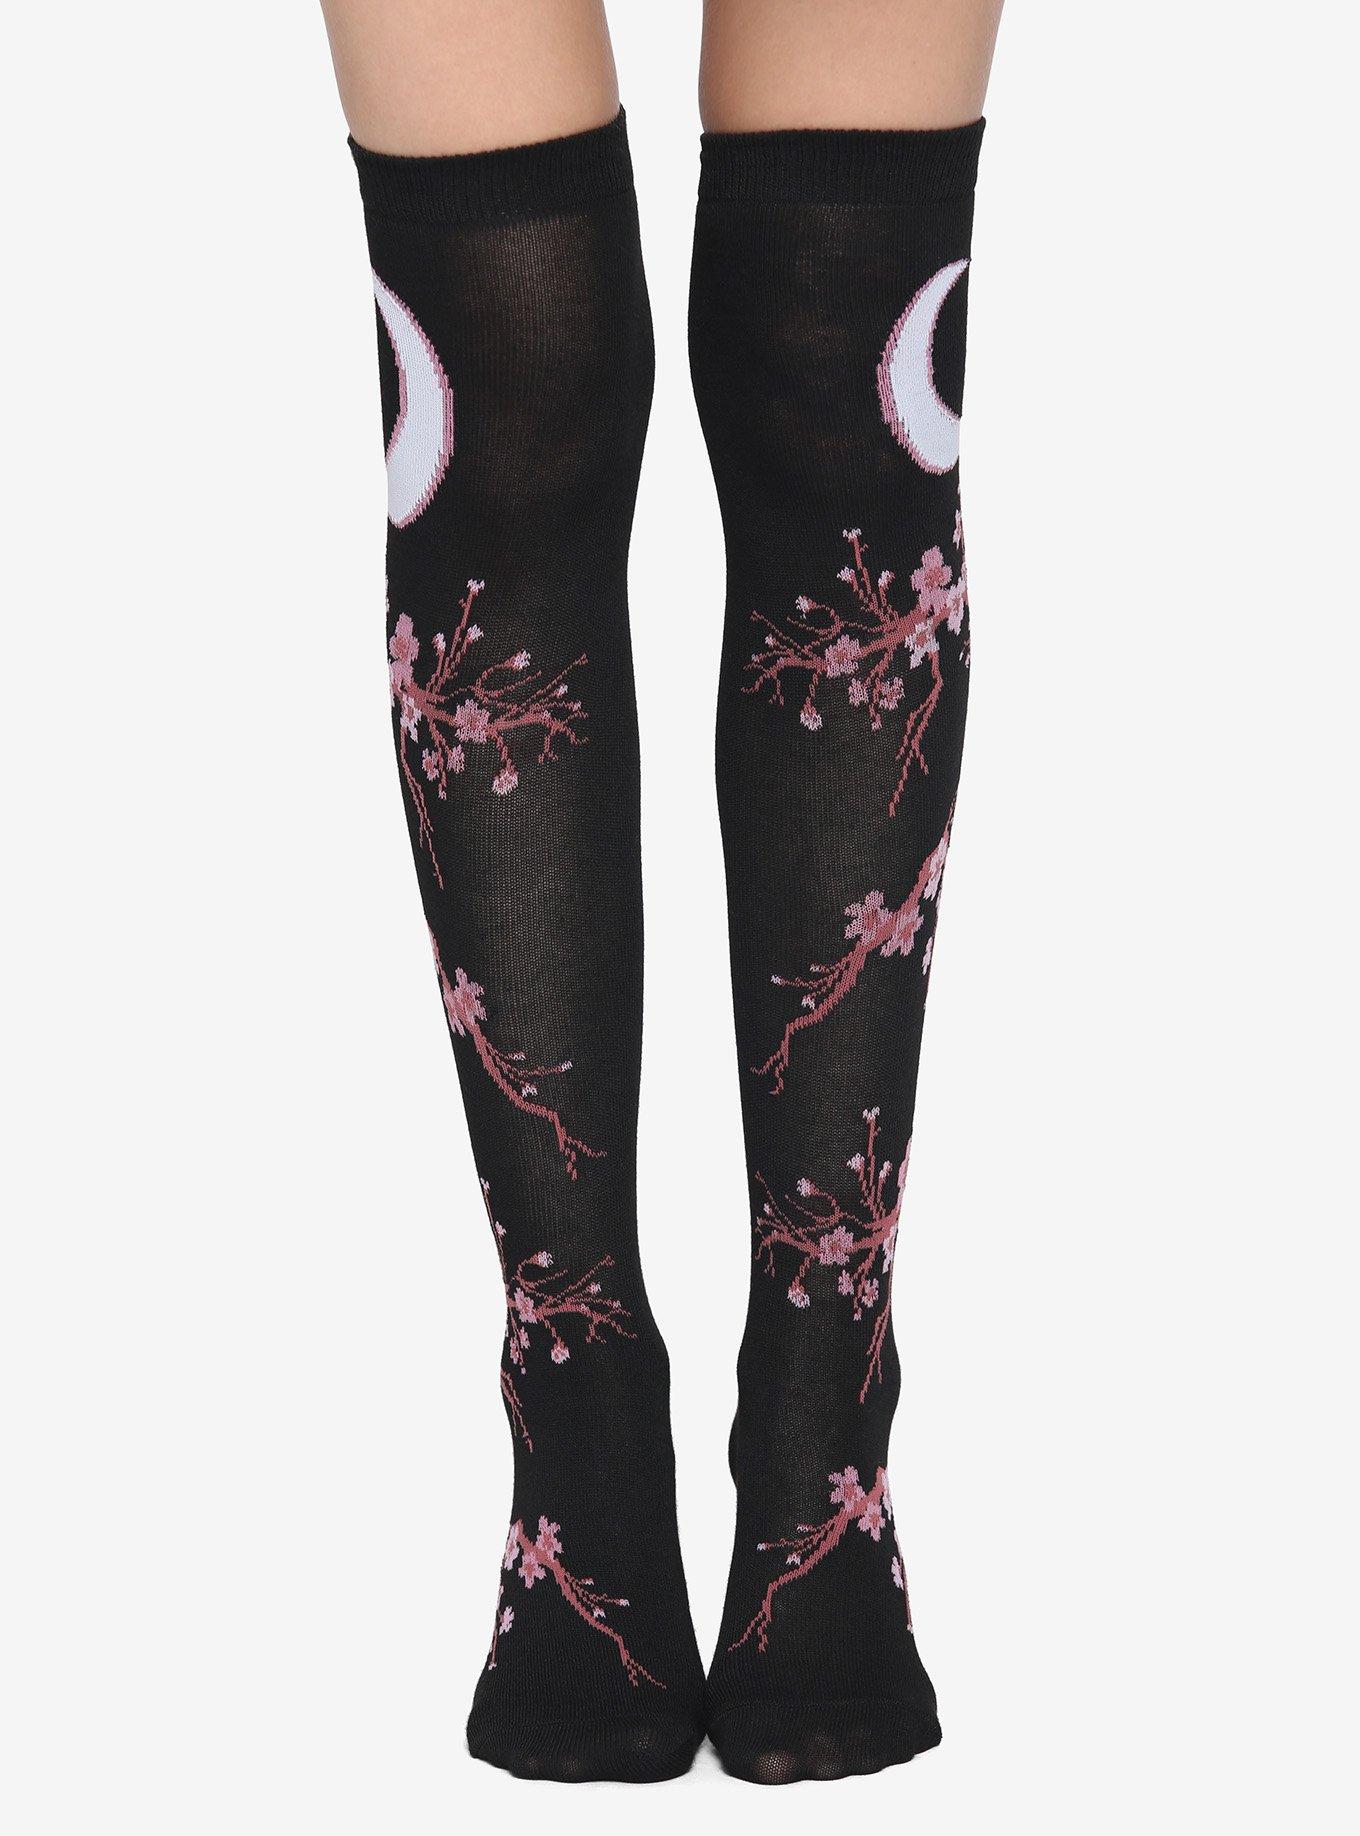 Moon Cherry Blossom Black Knee-High Socks, , alternate